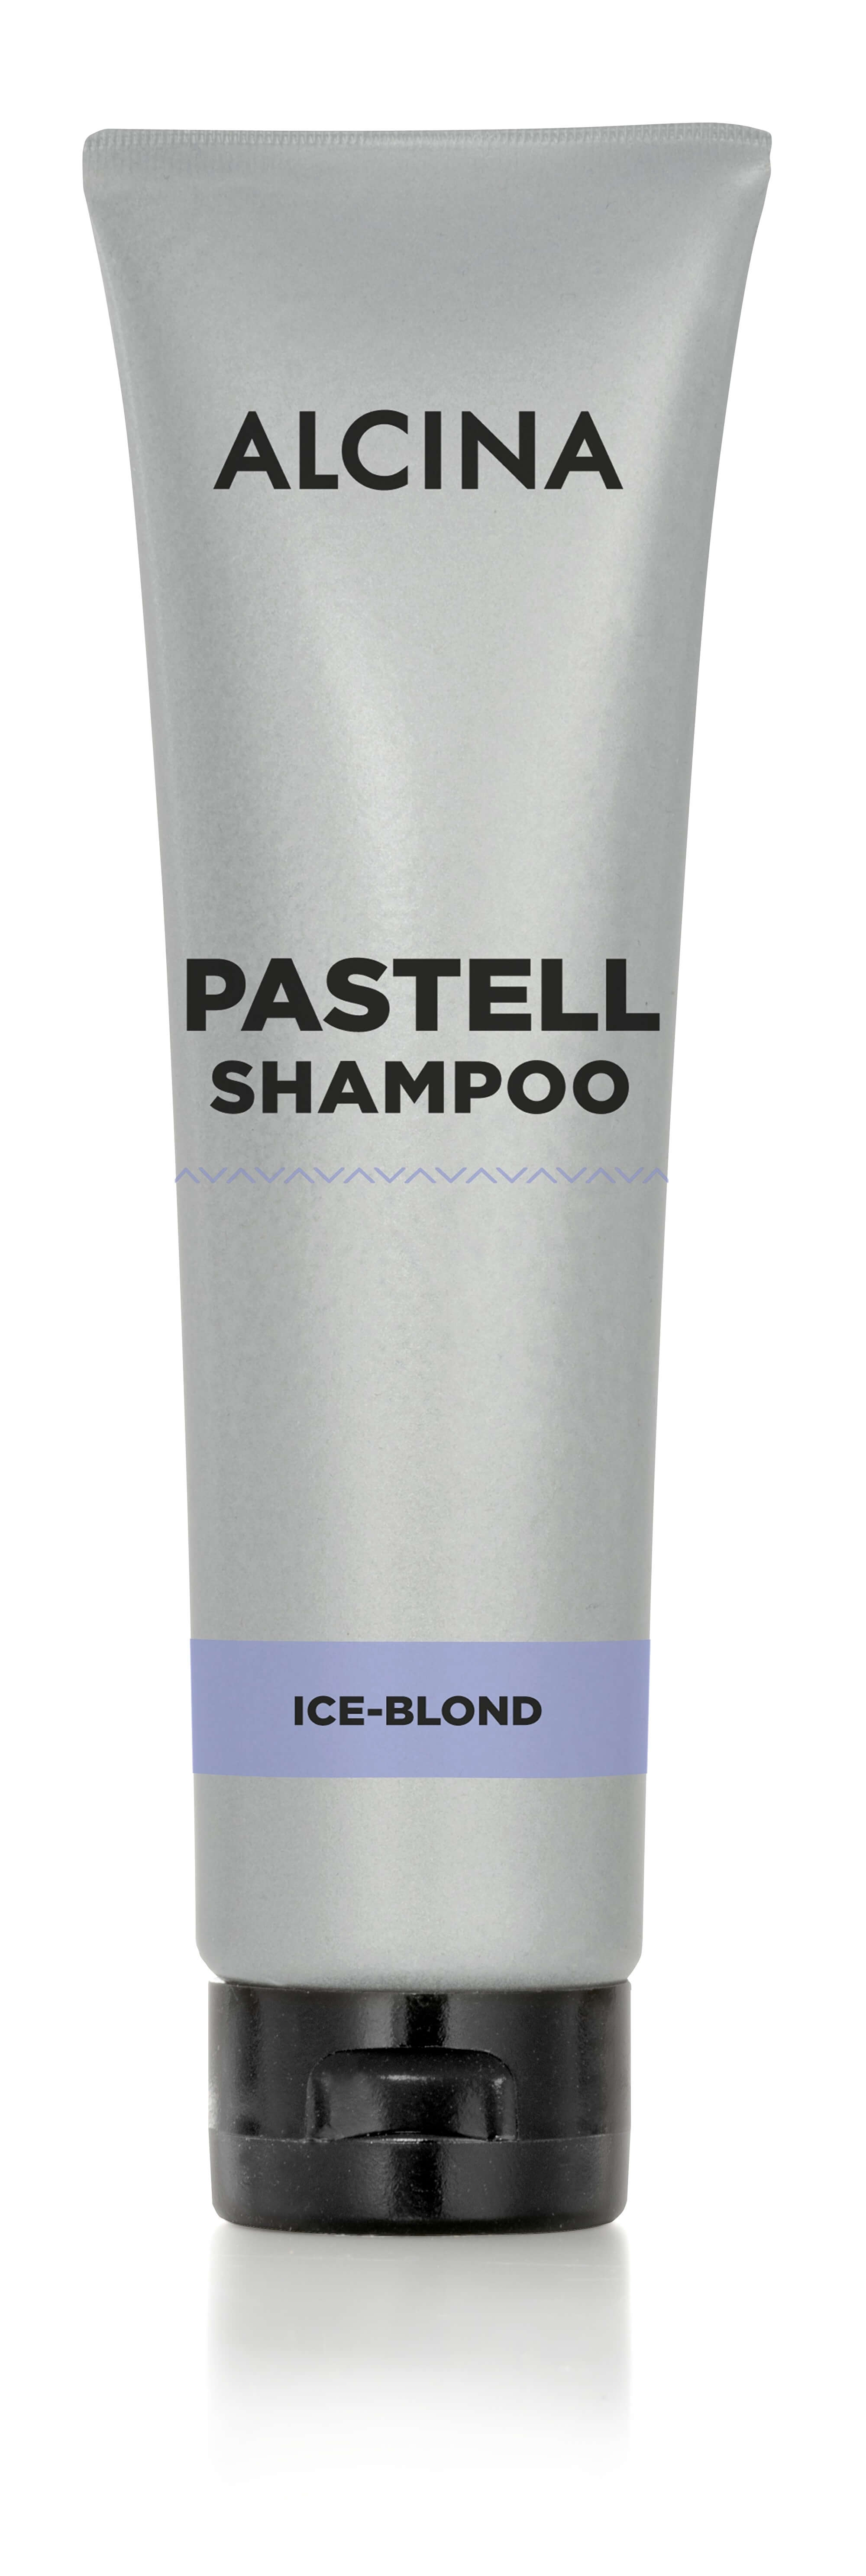 Alcina Šampón pre blond vlasy Ice Blond (Pastell Shampoo) 150 ml